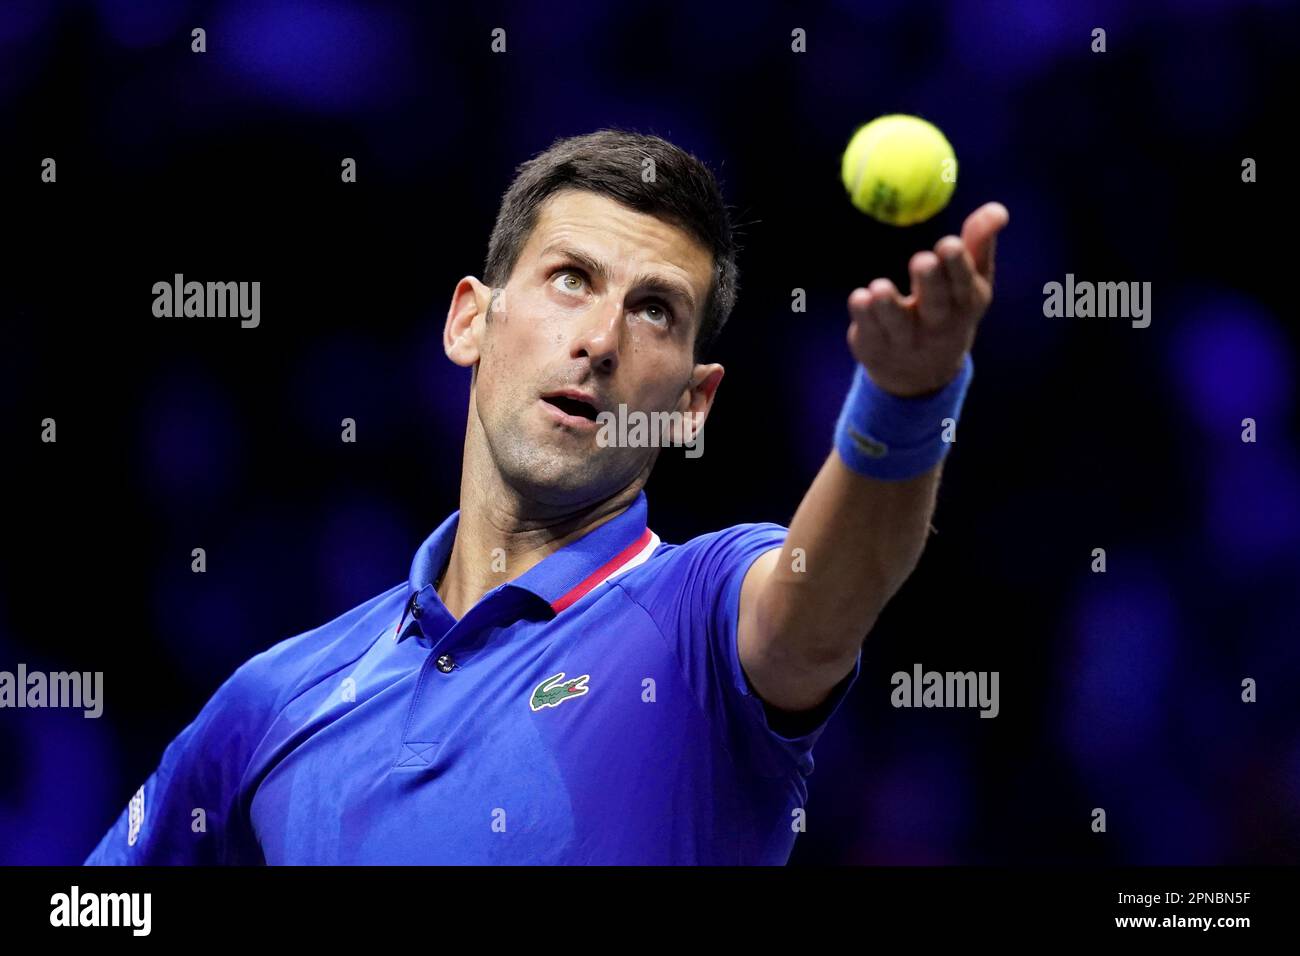 Foto de archivo fechada 24-09-2022 de Novak Djokovic que ha admitido que su codo derecho no está en una condición ideal. Fecha de emisión: Martes 18 de abril. 2023. Foto de stock